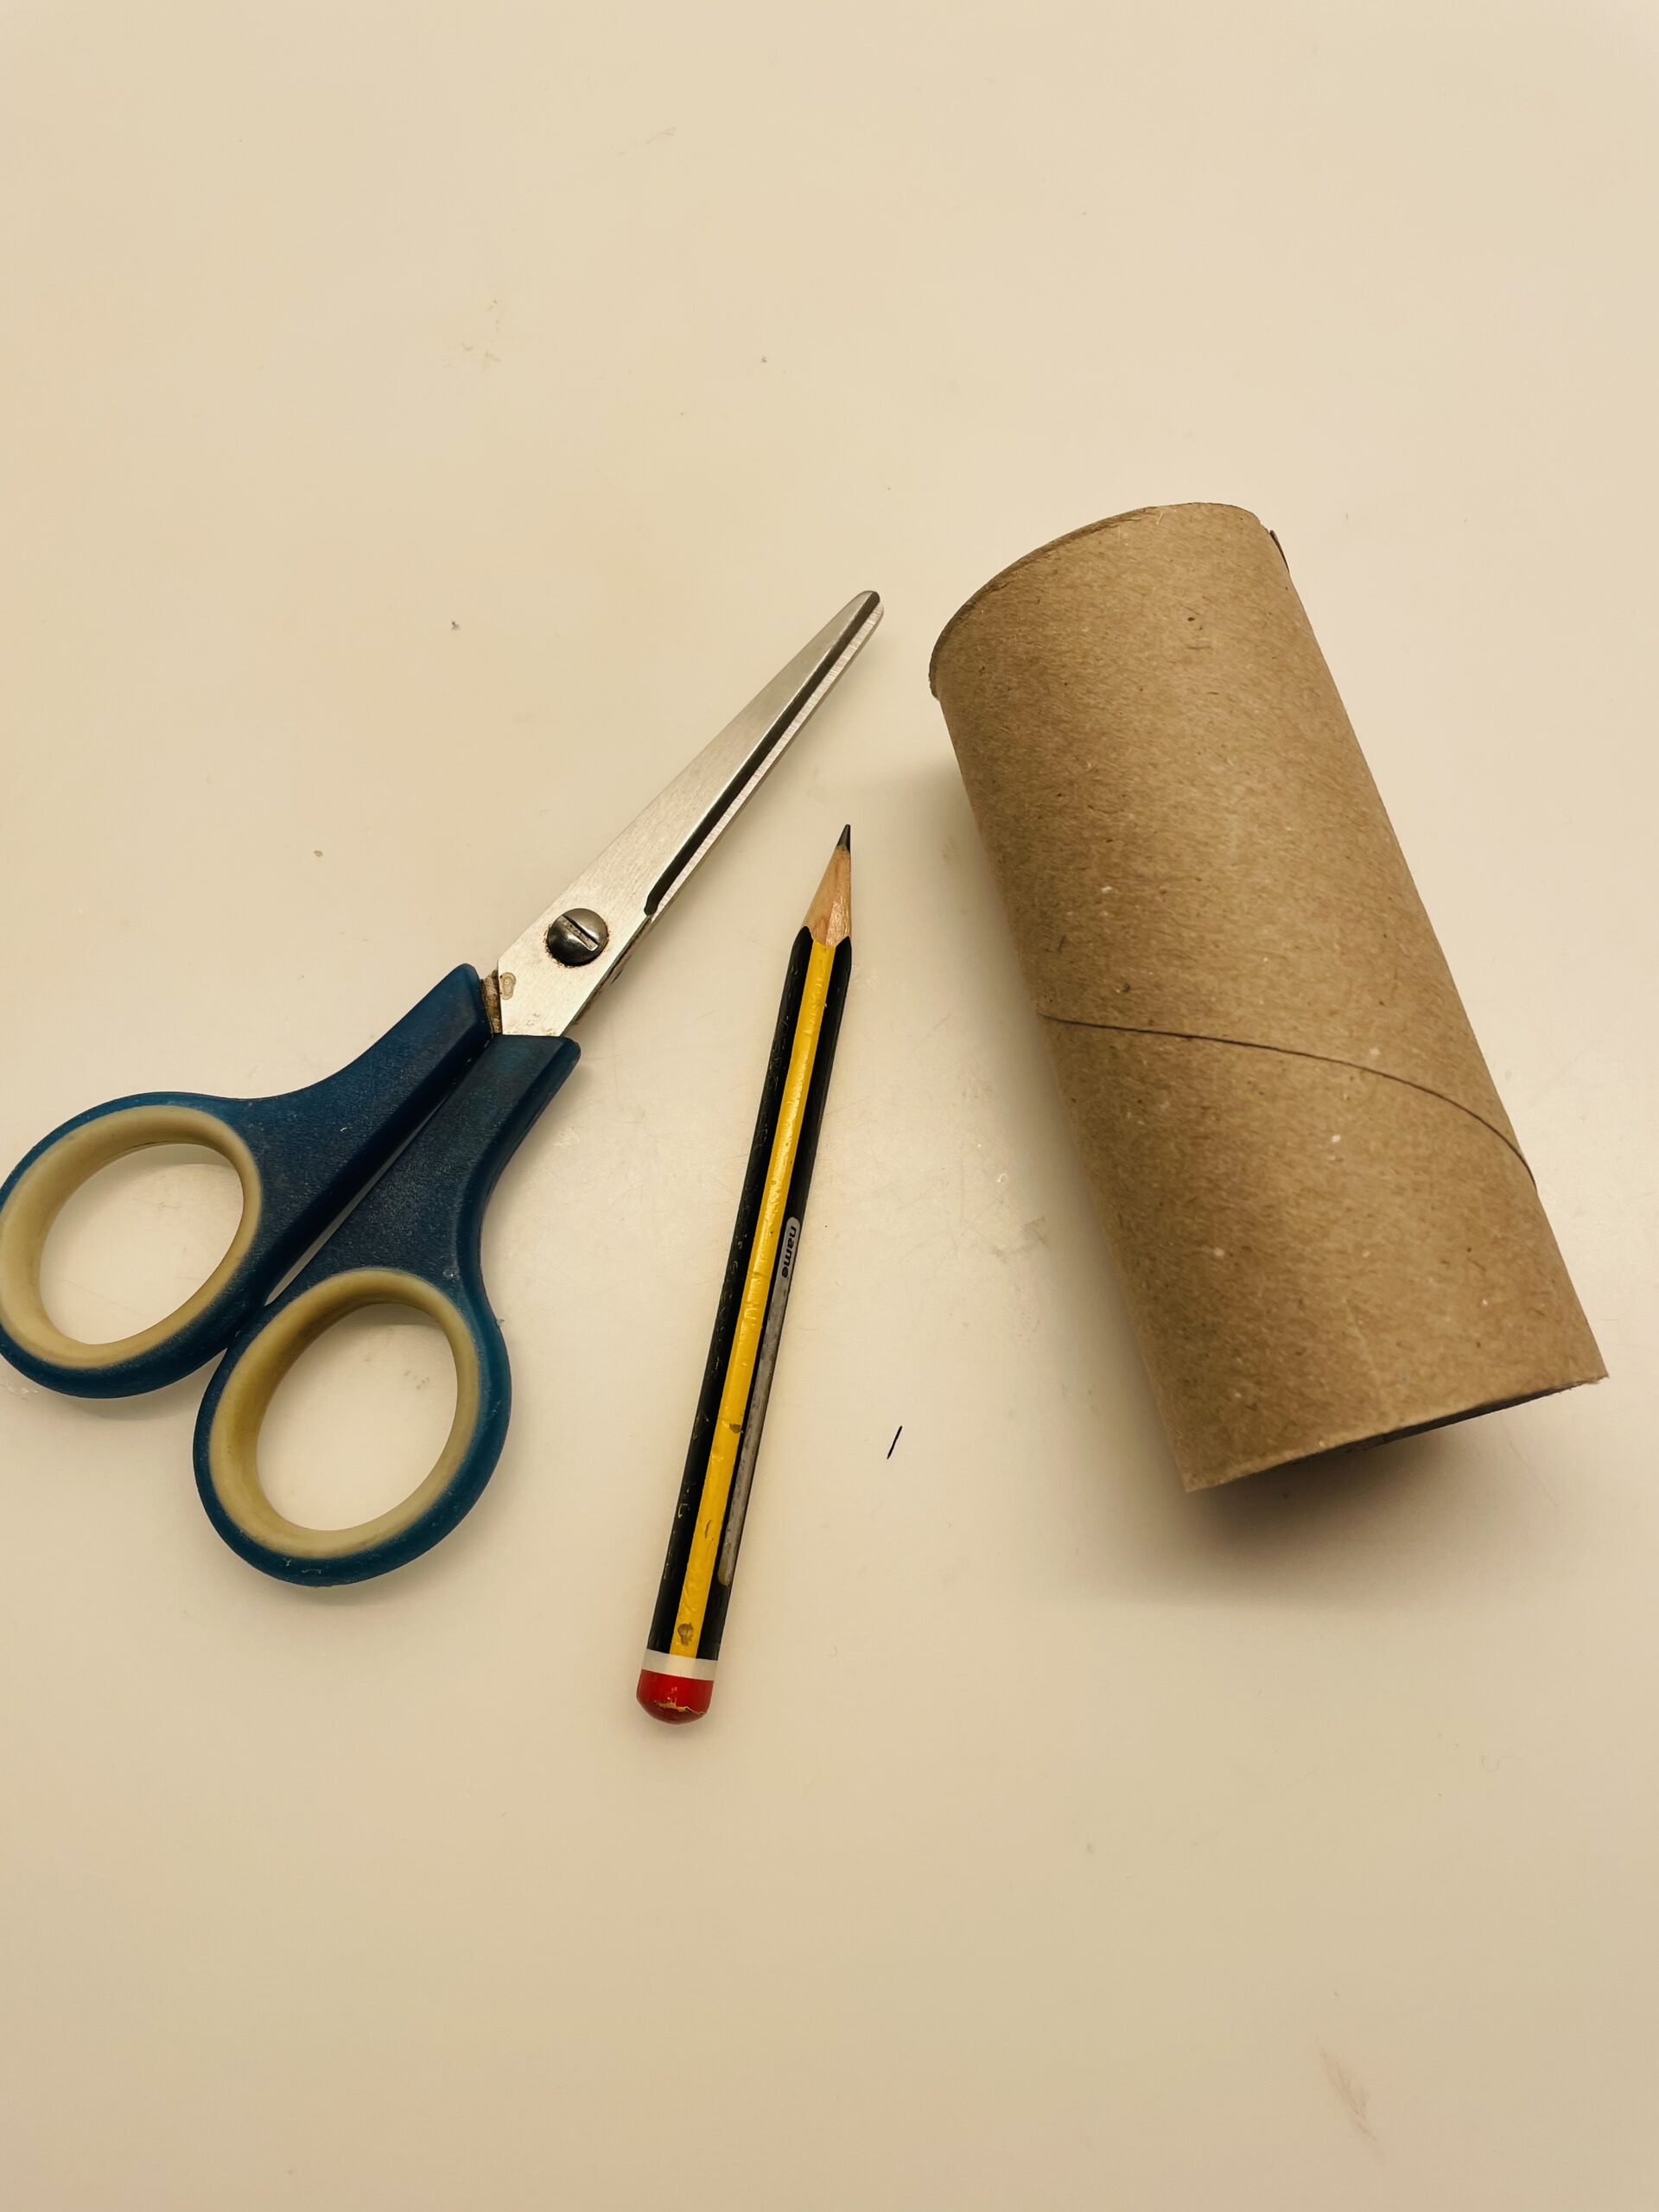 Bild zum Schritt 1 für das Bastel- und DIY-Abenteuer für Kinder: 'Legt euch zuerst eine Papprolle (Klorolle) bereit.'